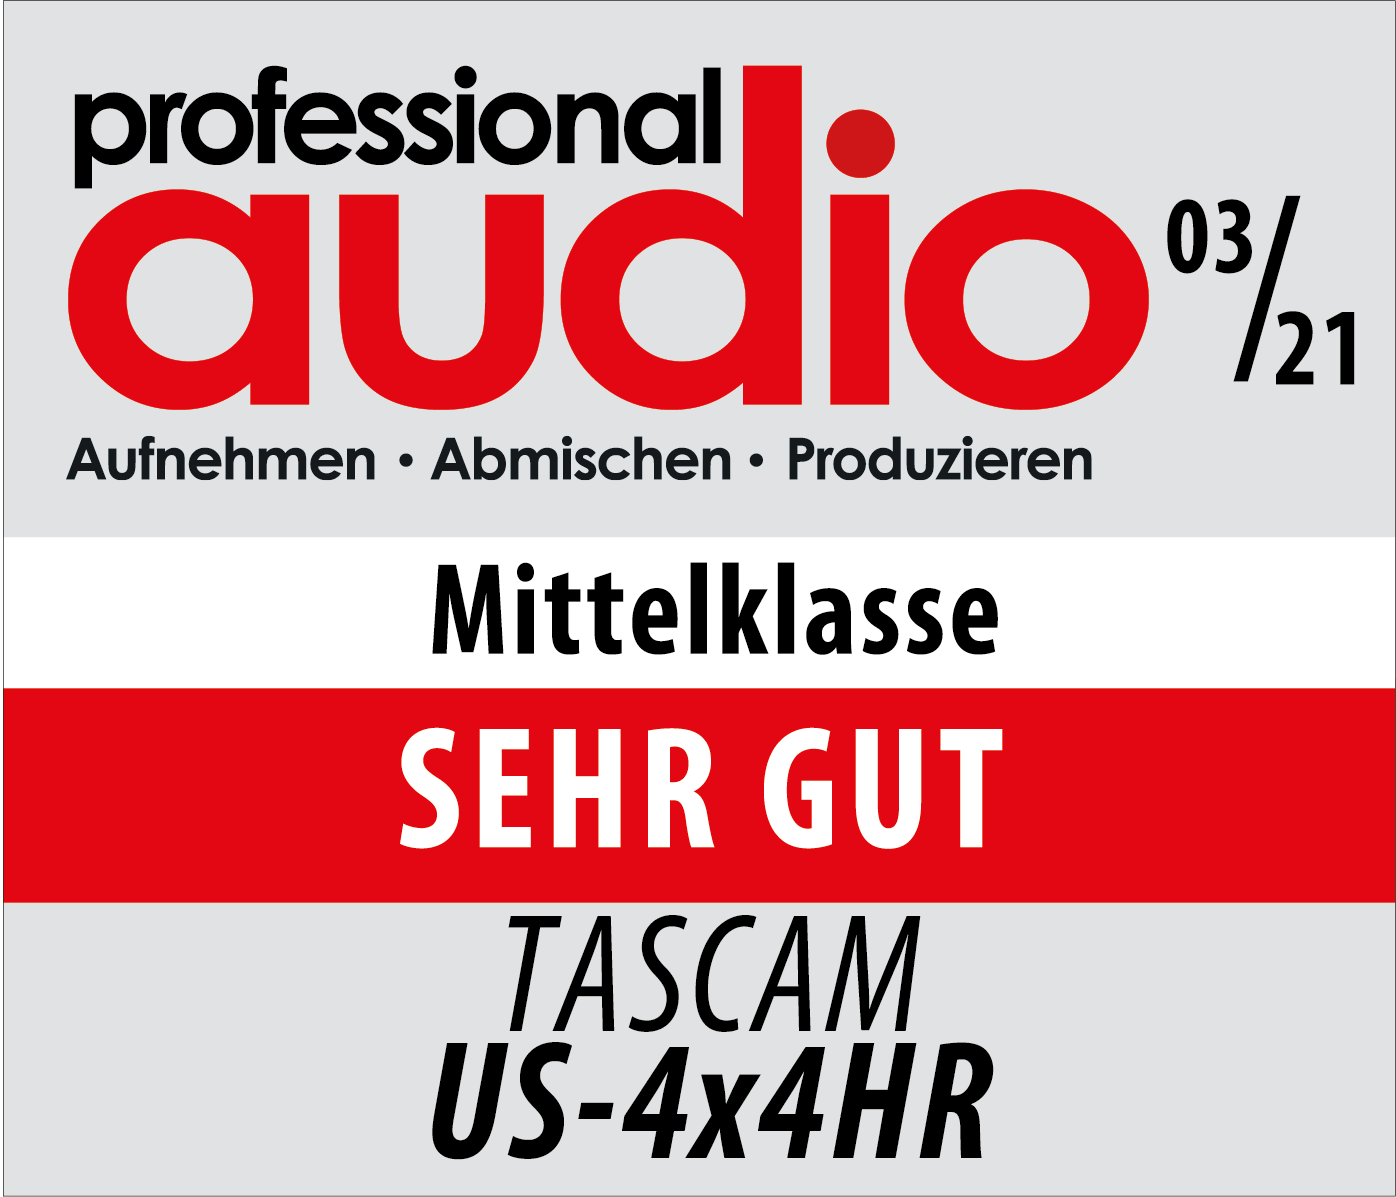 Professional Audio zeichnet das Tascam US-4x4HR mit dem Prädikat 'SEHR GUT' aus